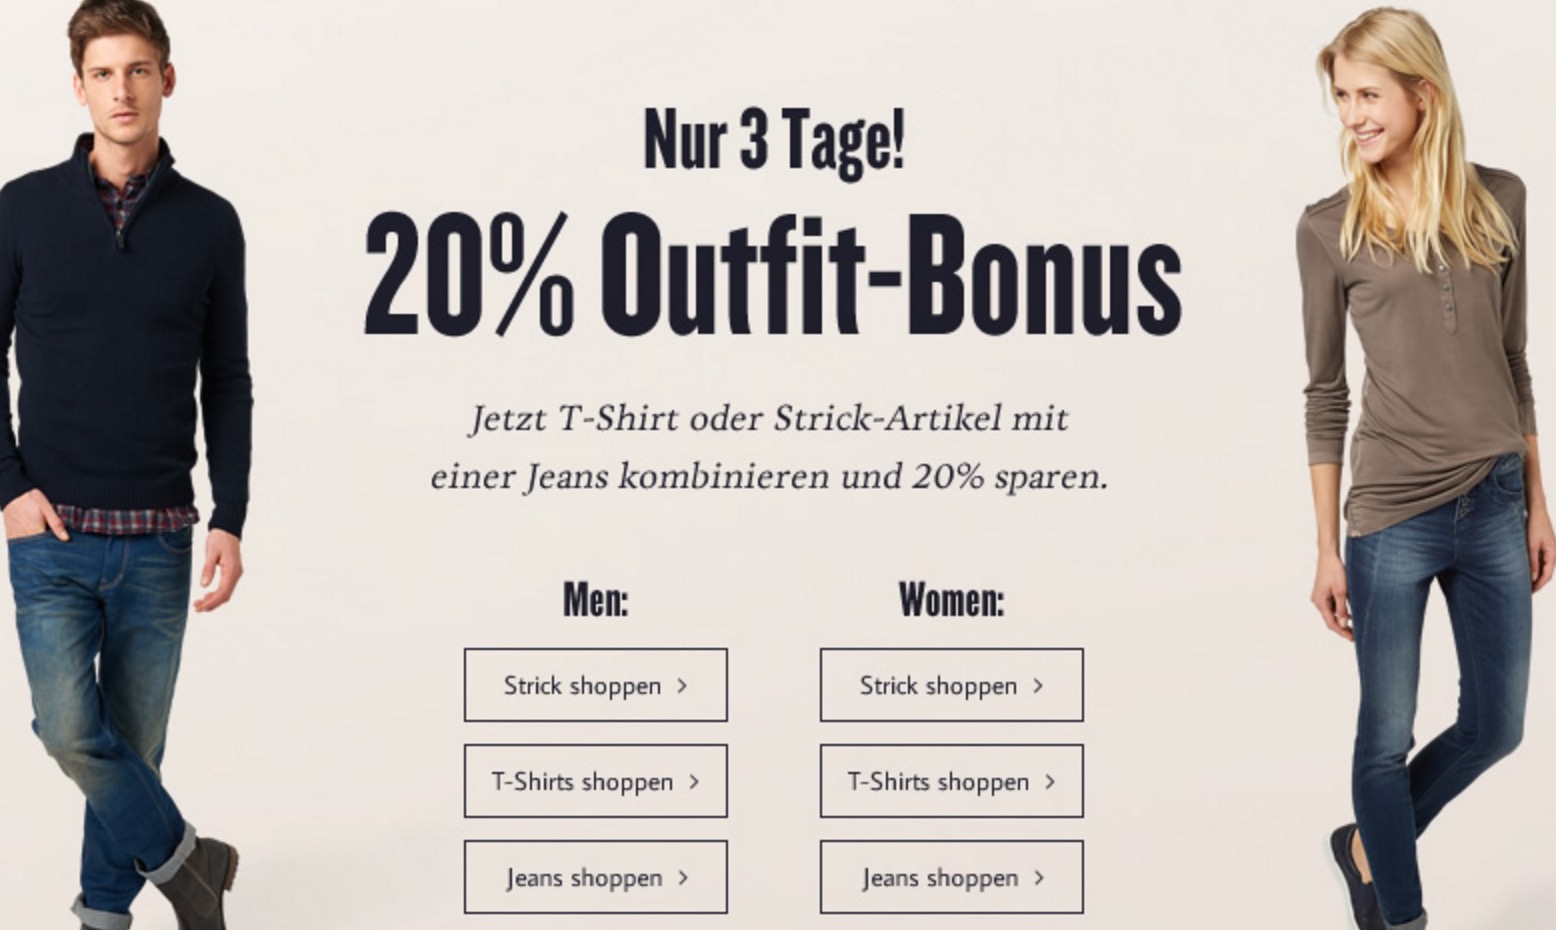 20% Outfit-Bonus bei Kombination von T-Shirts, Strick und Jeans bei Tom Tailor